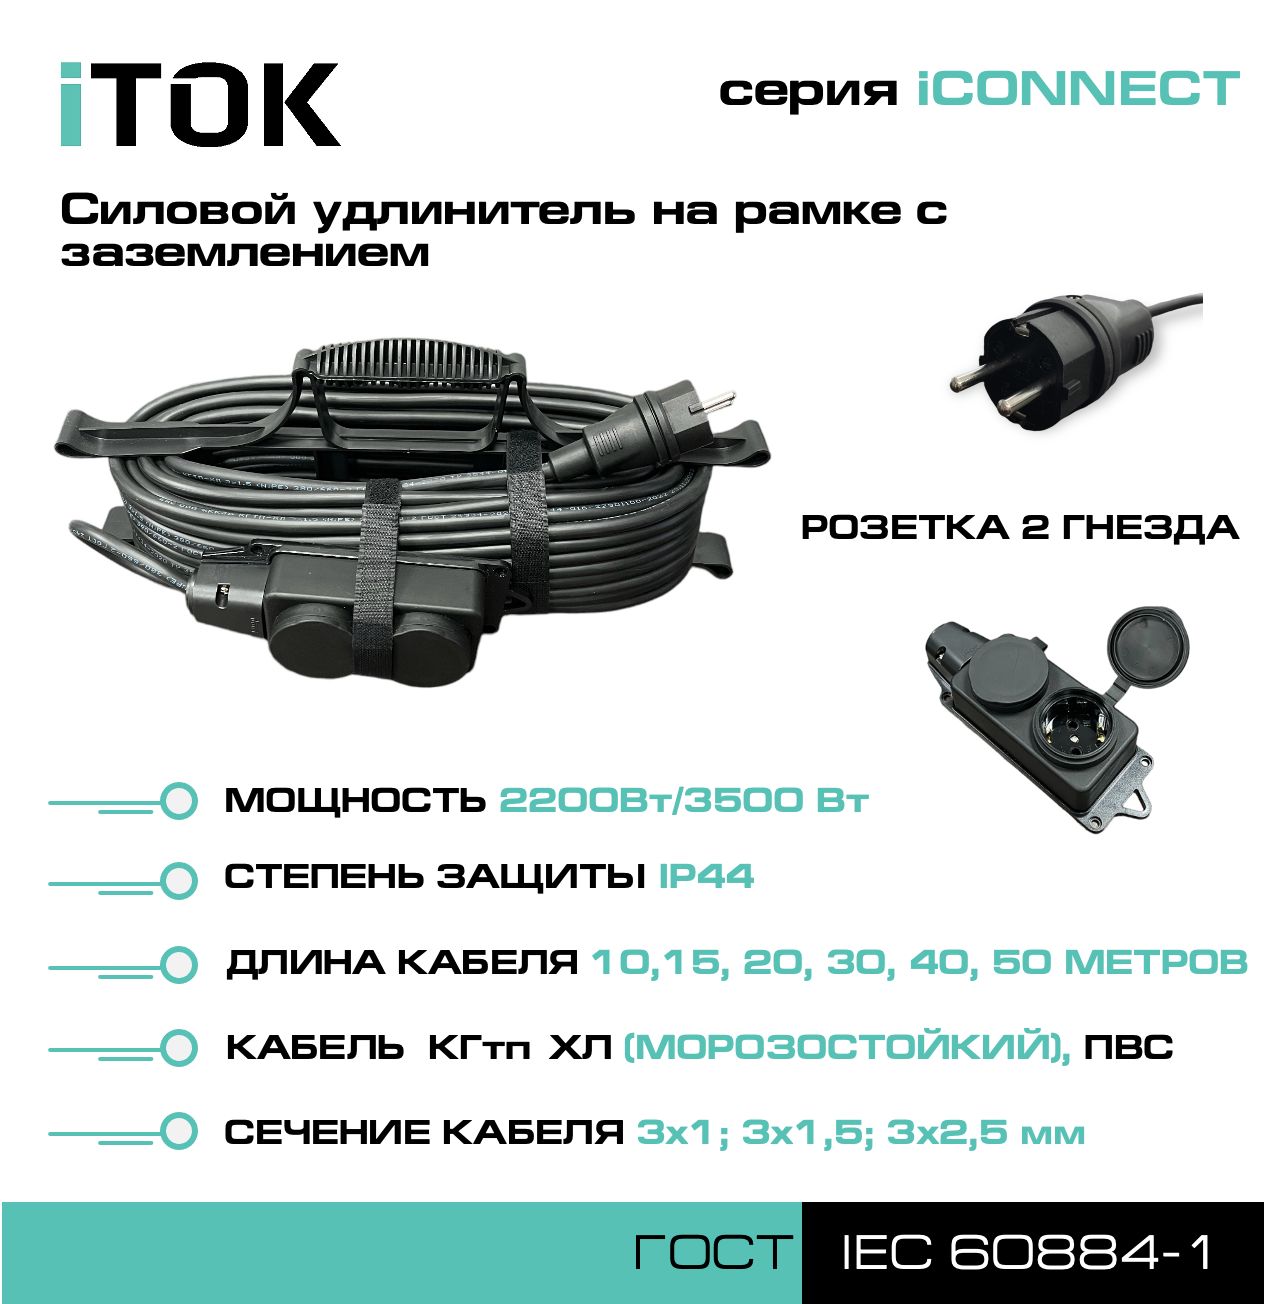 Удлинитель на рамке с заземлением серии iTOK iCONNECT КГтп-ХЛ 3х2,5 мм 2 гнезда IP44 15 м фигурный пазл в рамке